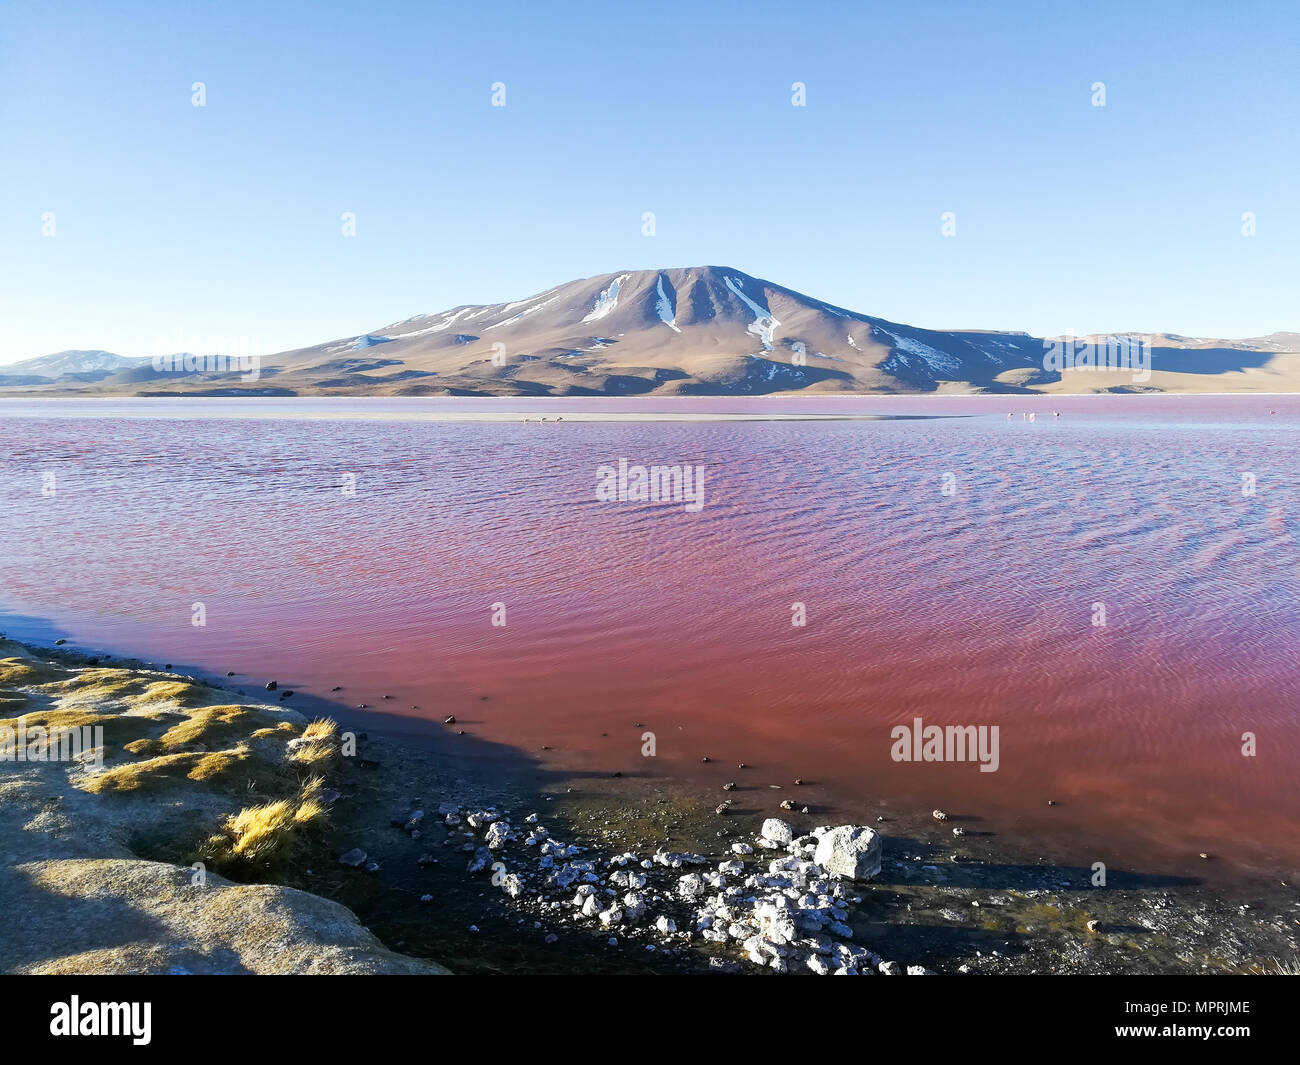 La Laguna Colorada aménage, la Bolivie. Beau panorama de la Bolivie. Lagune d'eau rouge Banque D'Images